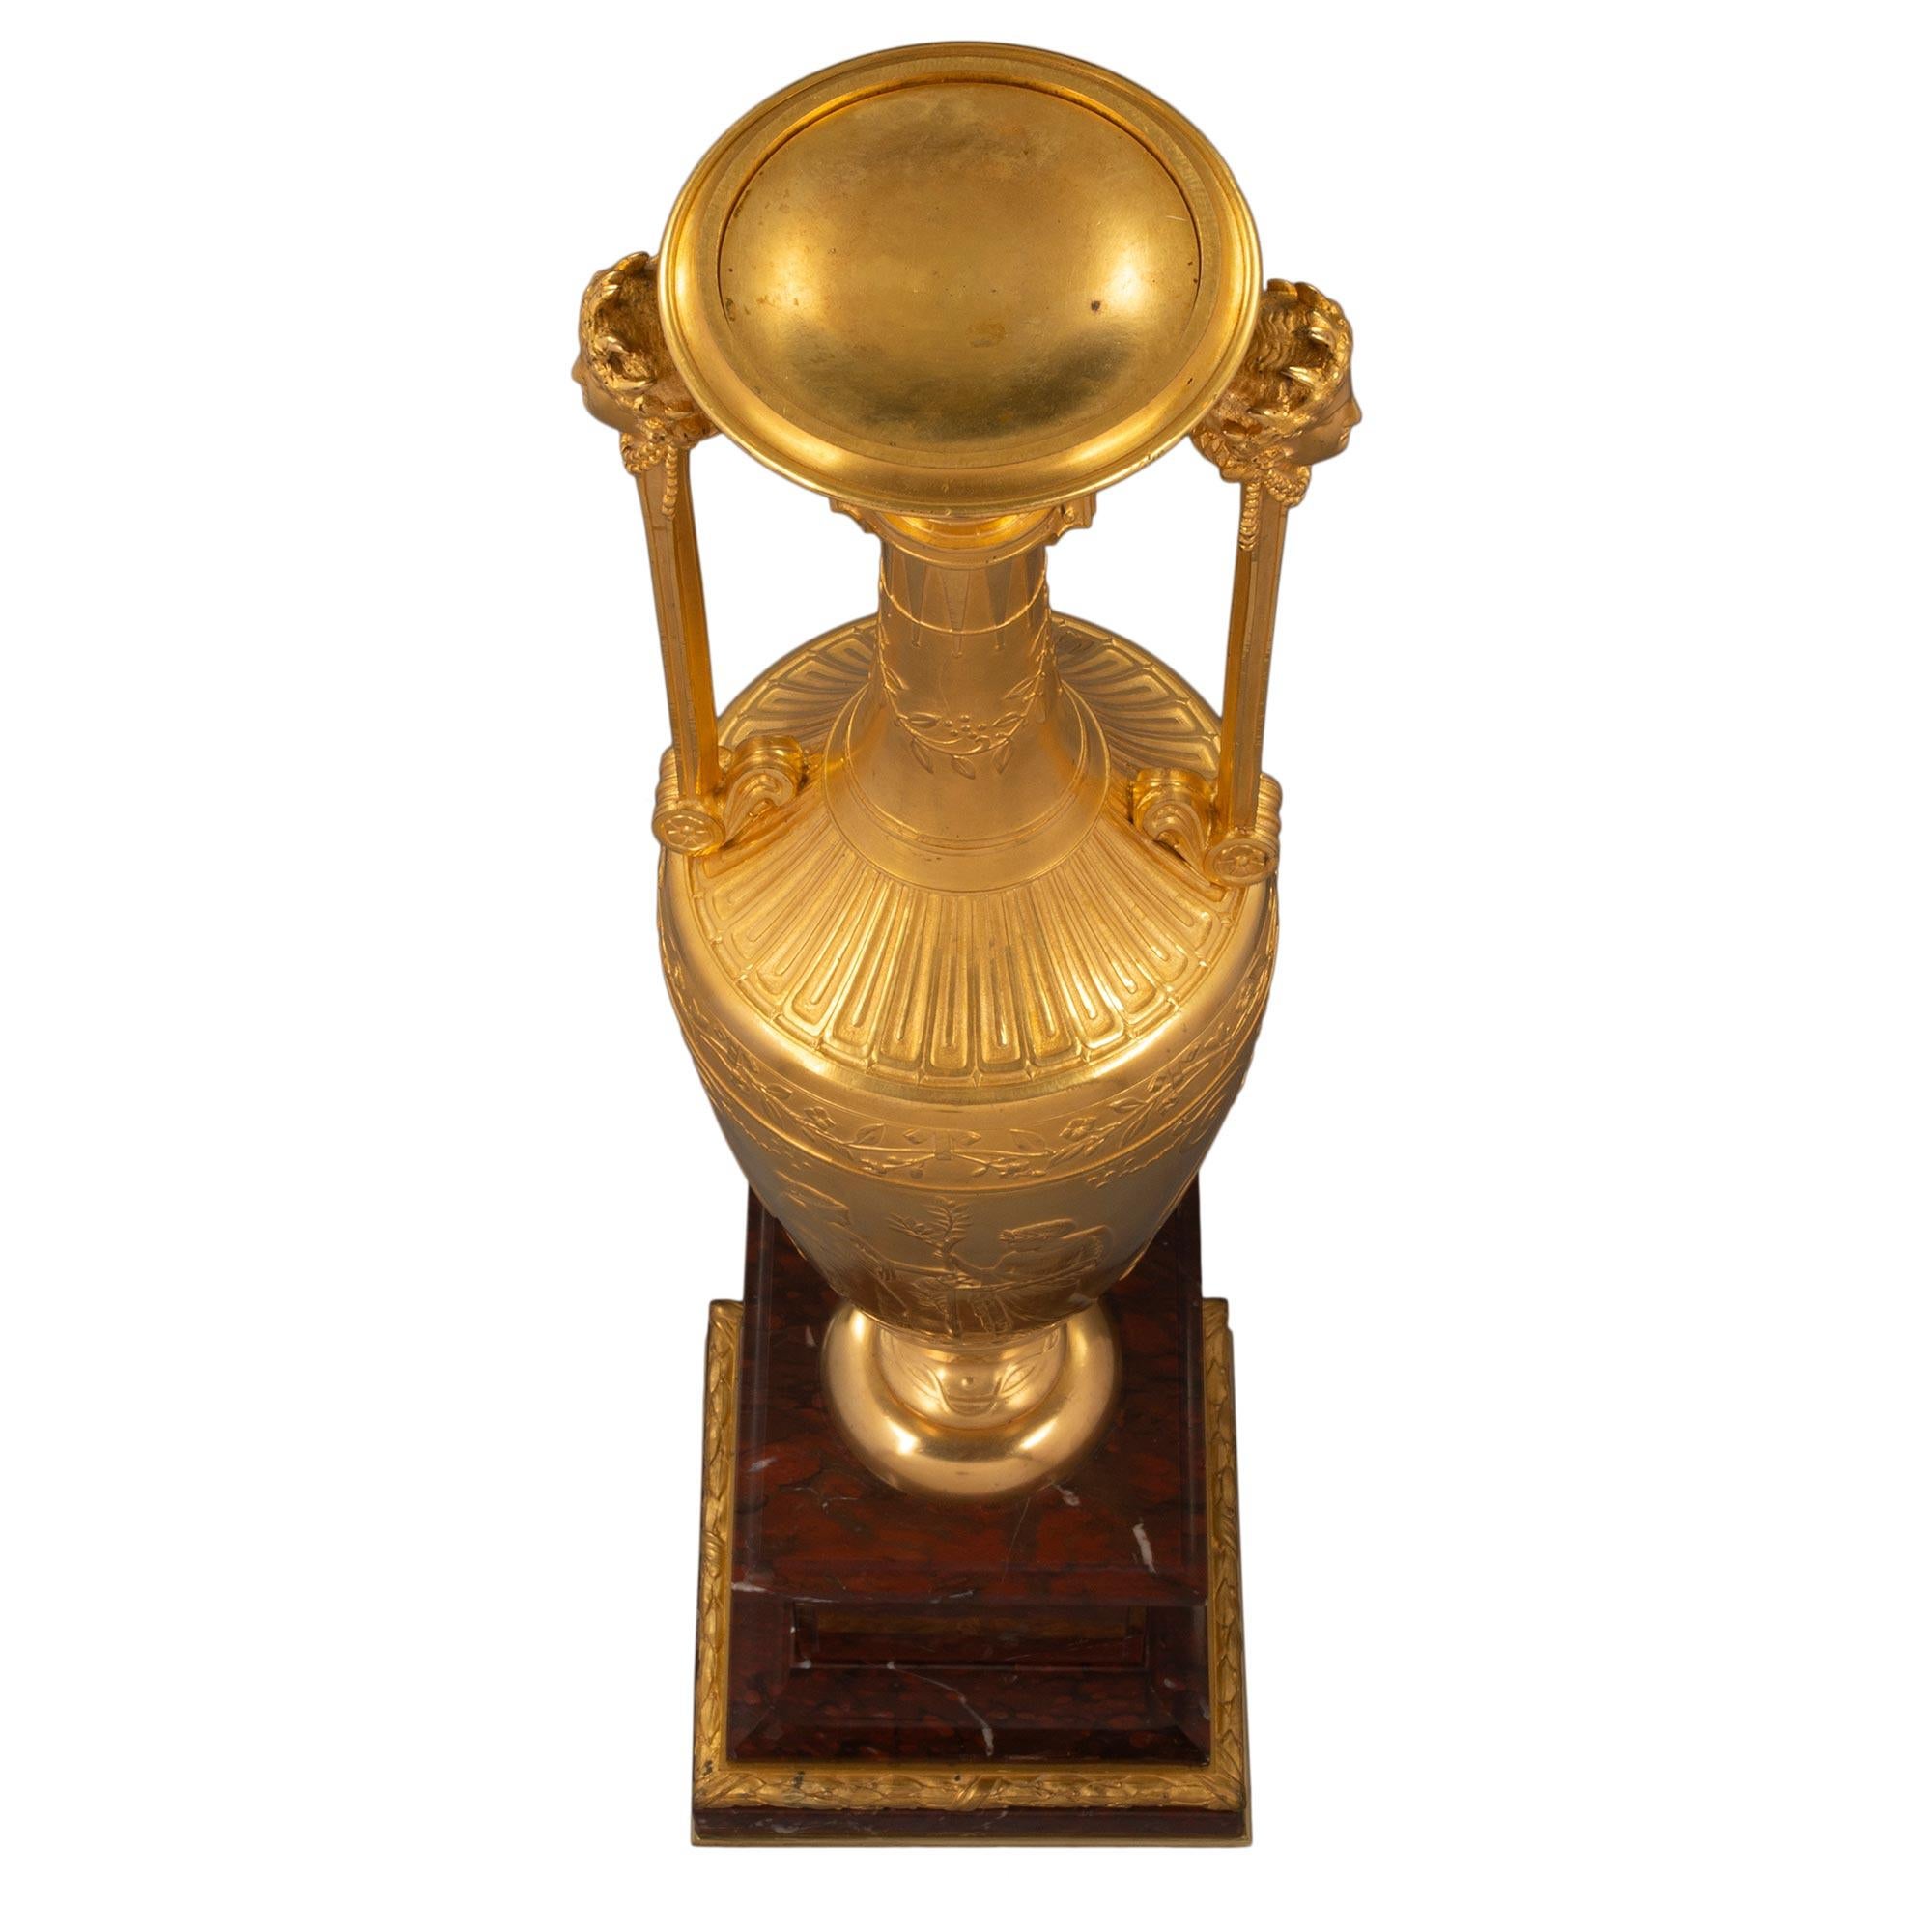 Une paire sensationnelle et de très haute qualité de vases d'apparat gréco-égyptiens du 19ème siècle en marbre et bronze doré, vers 1880. Les vases, signés par Ferdinand Barbedienne, sont surélevés par des bases carrées en marbre Rouge Griotte. Les